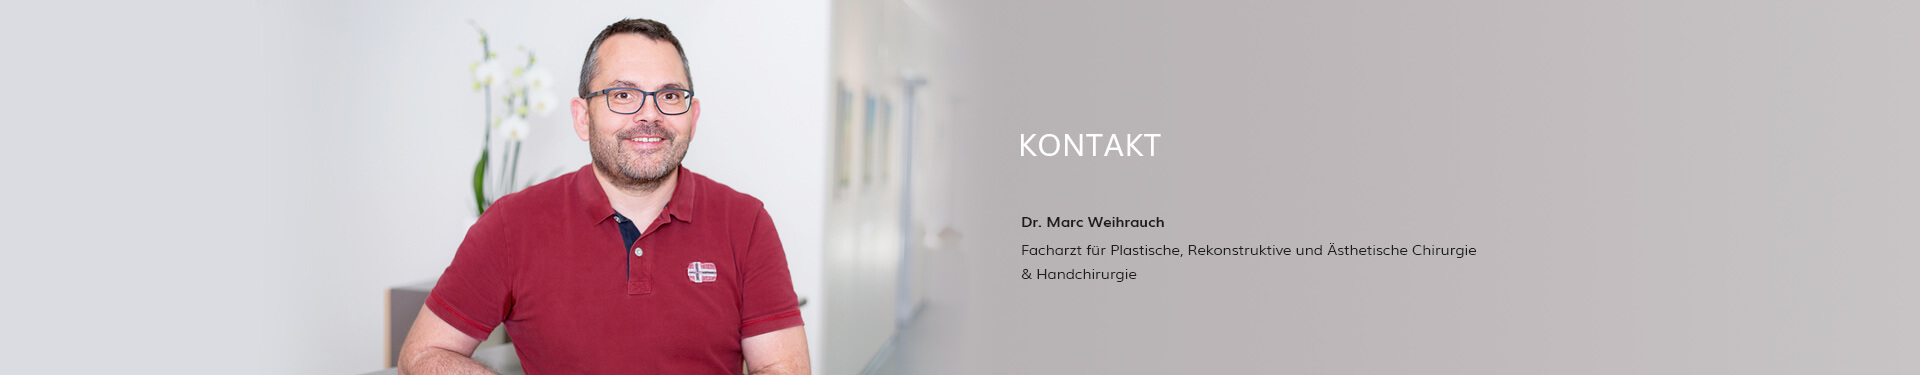 Kontakt Dr. Weihrauch, Plastische Chirurgie in Karlsruhe  